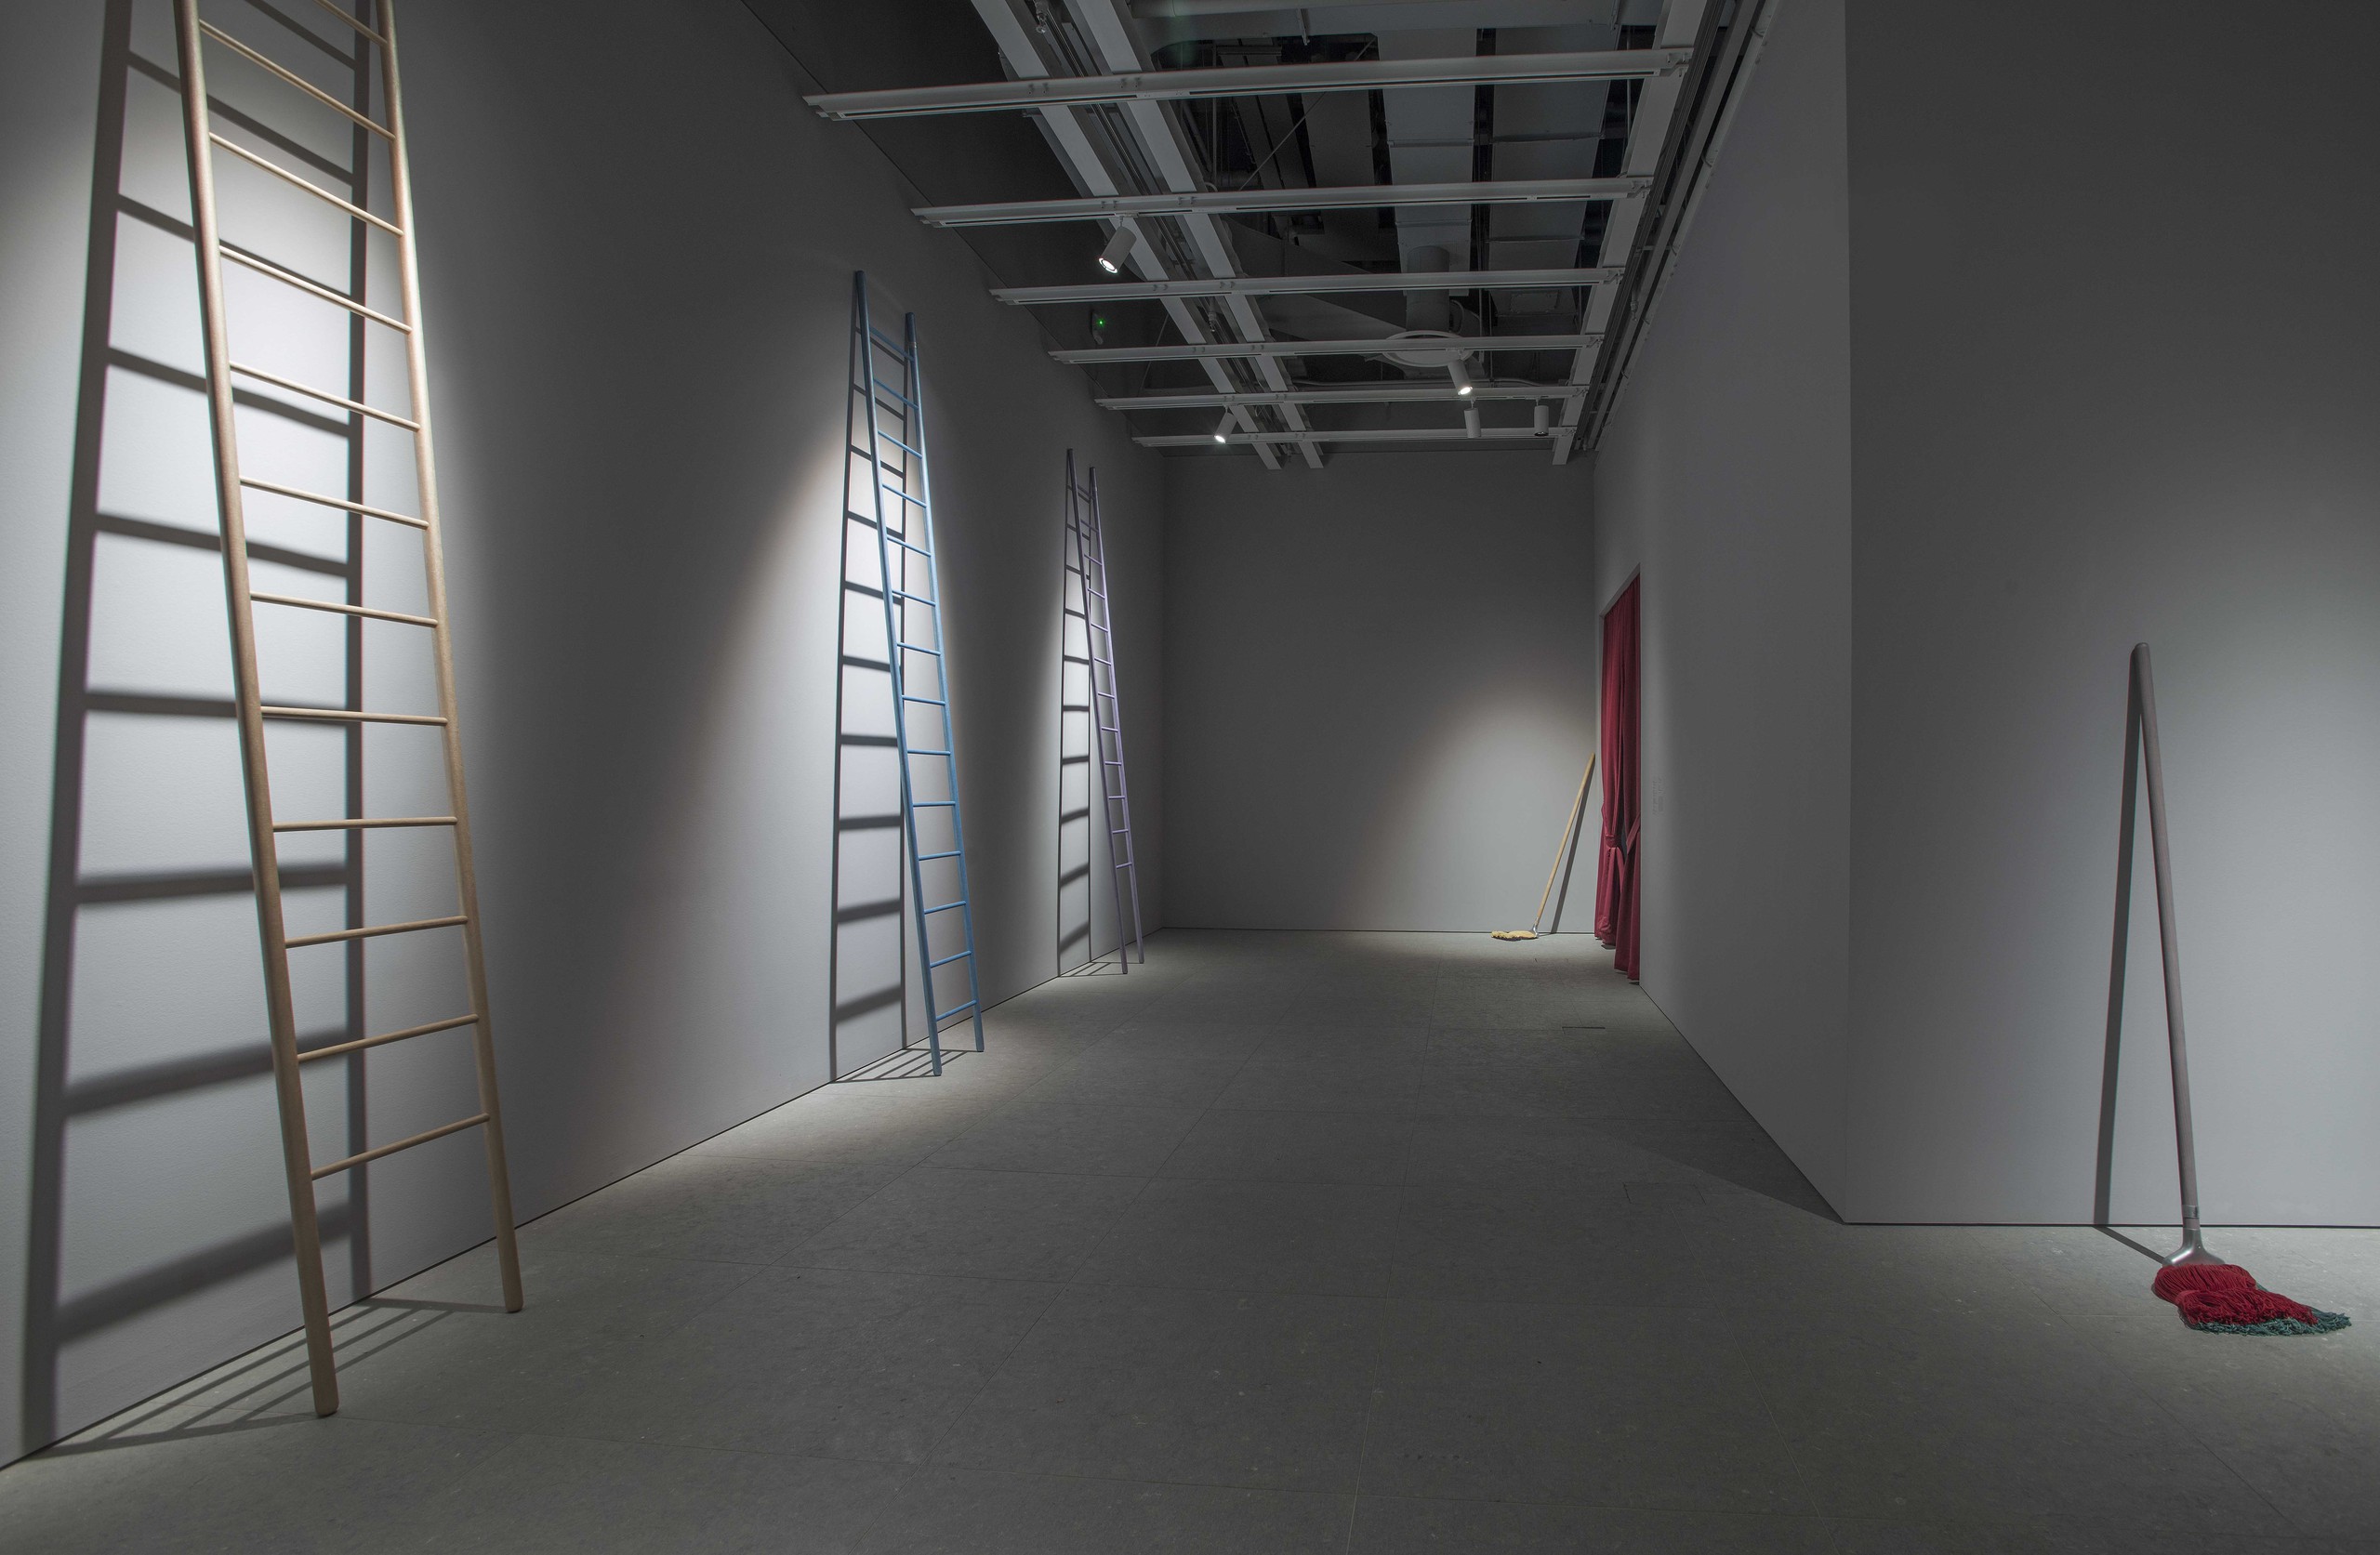 Installation view, Brig Und Ladder, Whitney Museum of American Art, New York, 2017